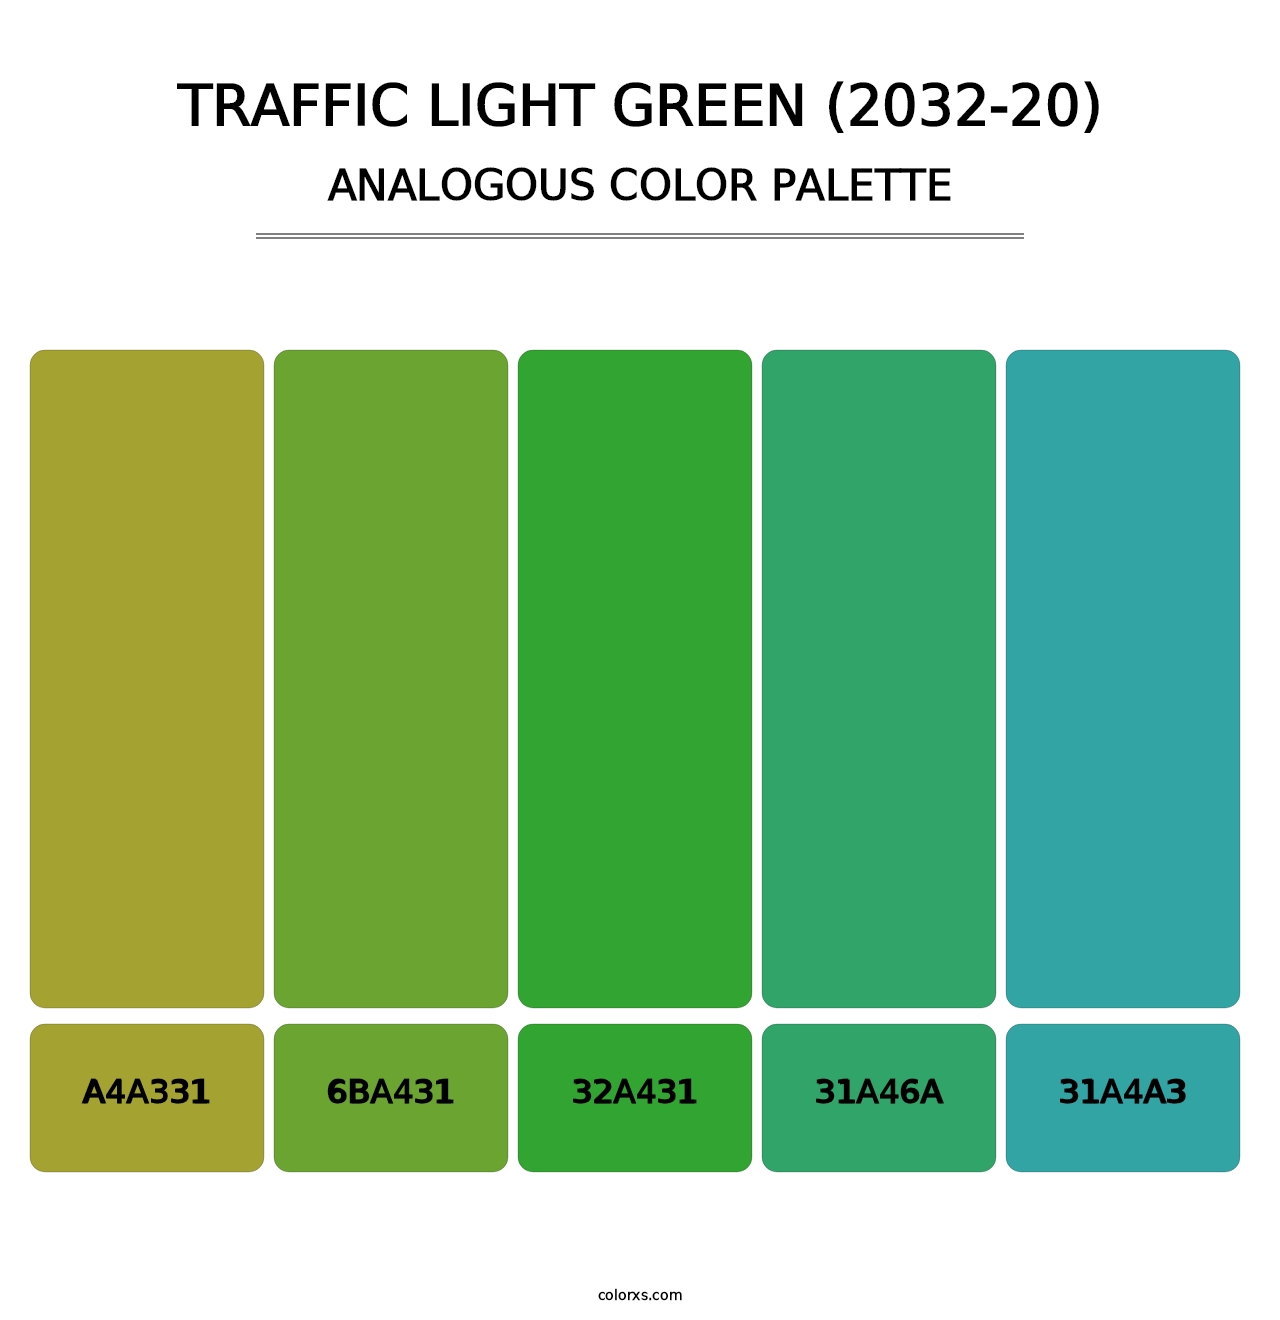 Traffic Light Green (2032-20) - Analogous Color Palette